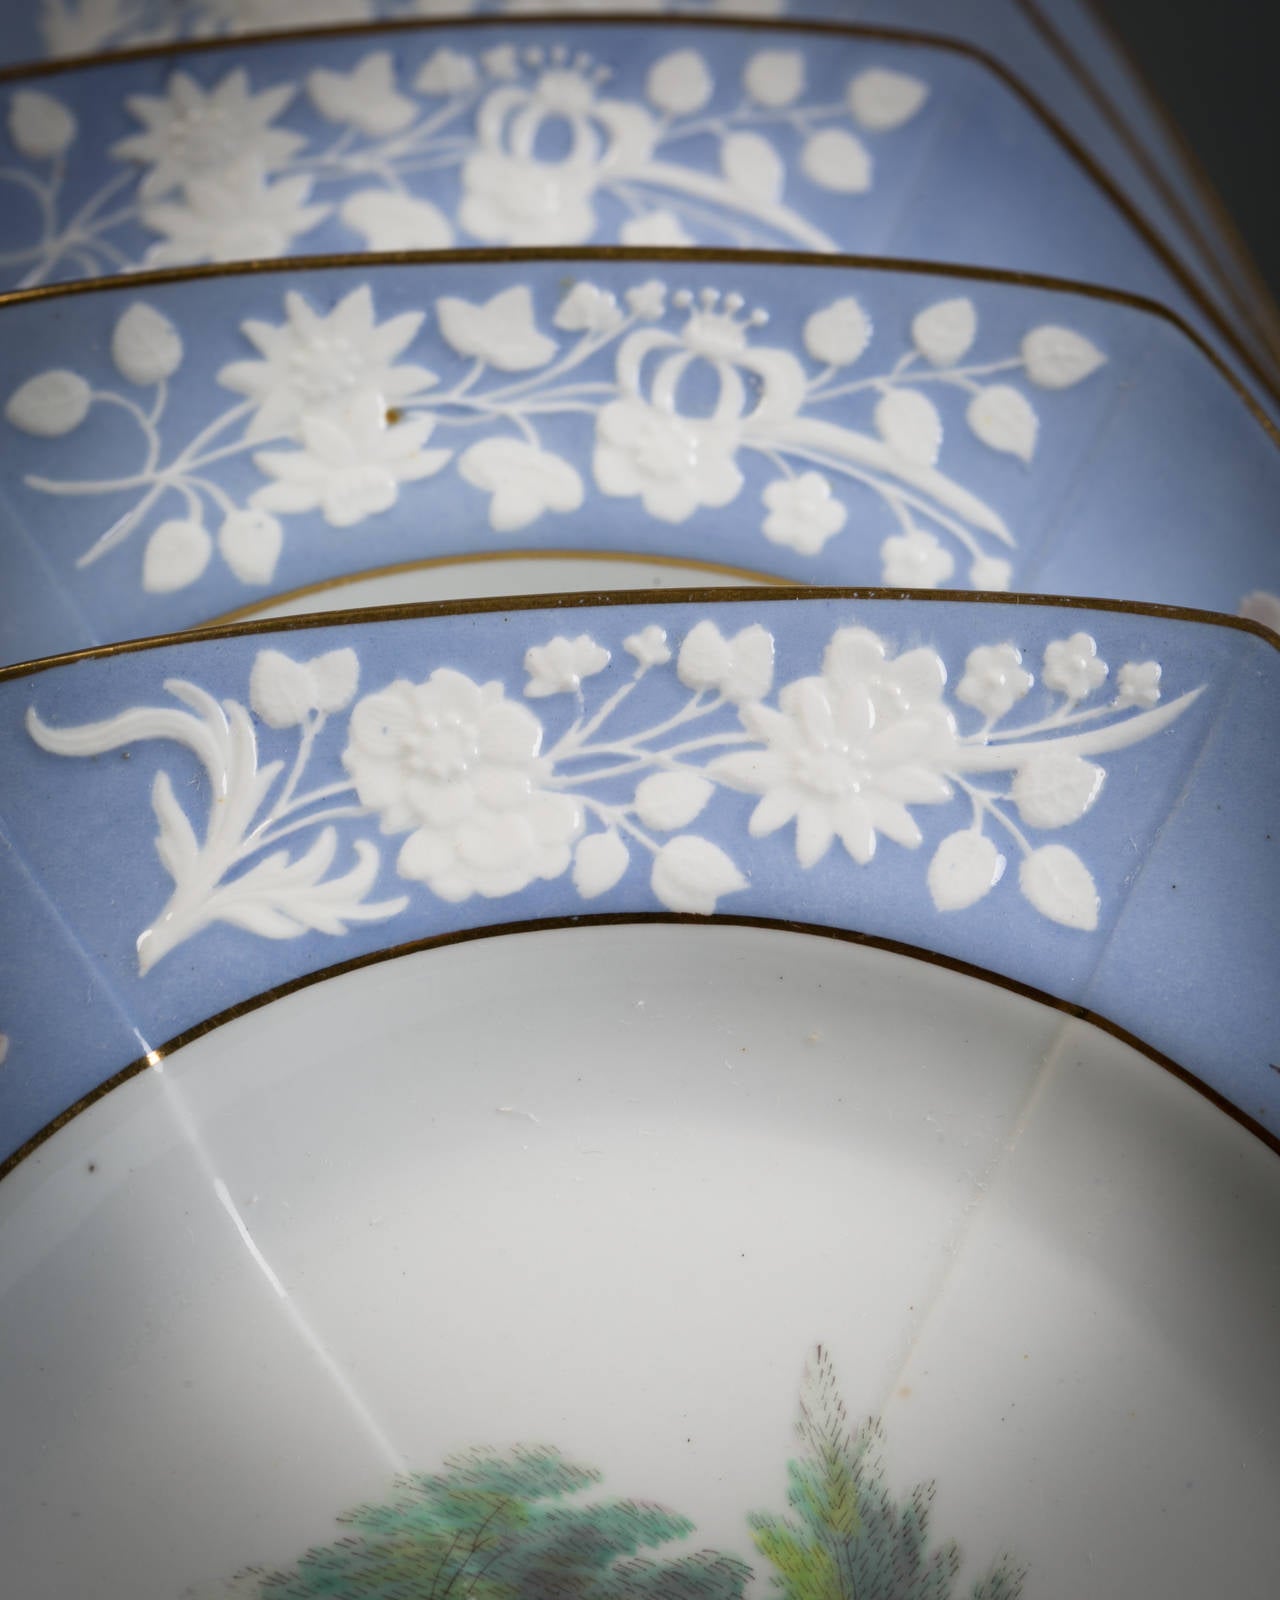 Juego de 12 platos de porcelana inglesa para pañuelos, Spode, hacia 1820 principios del siglo XIX en venta